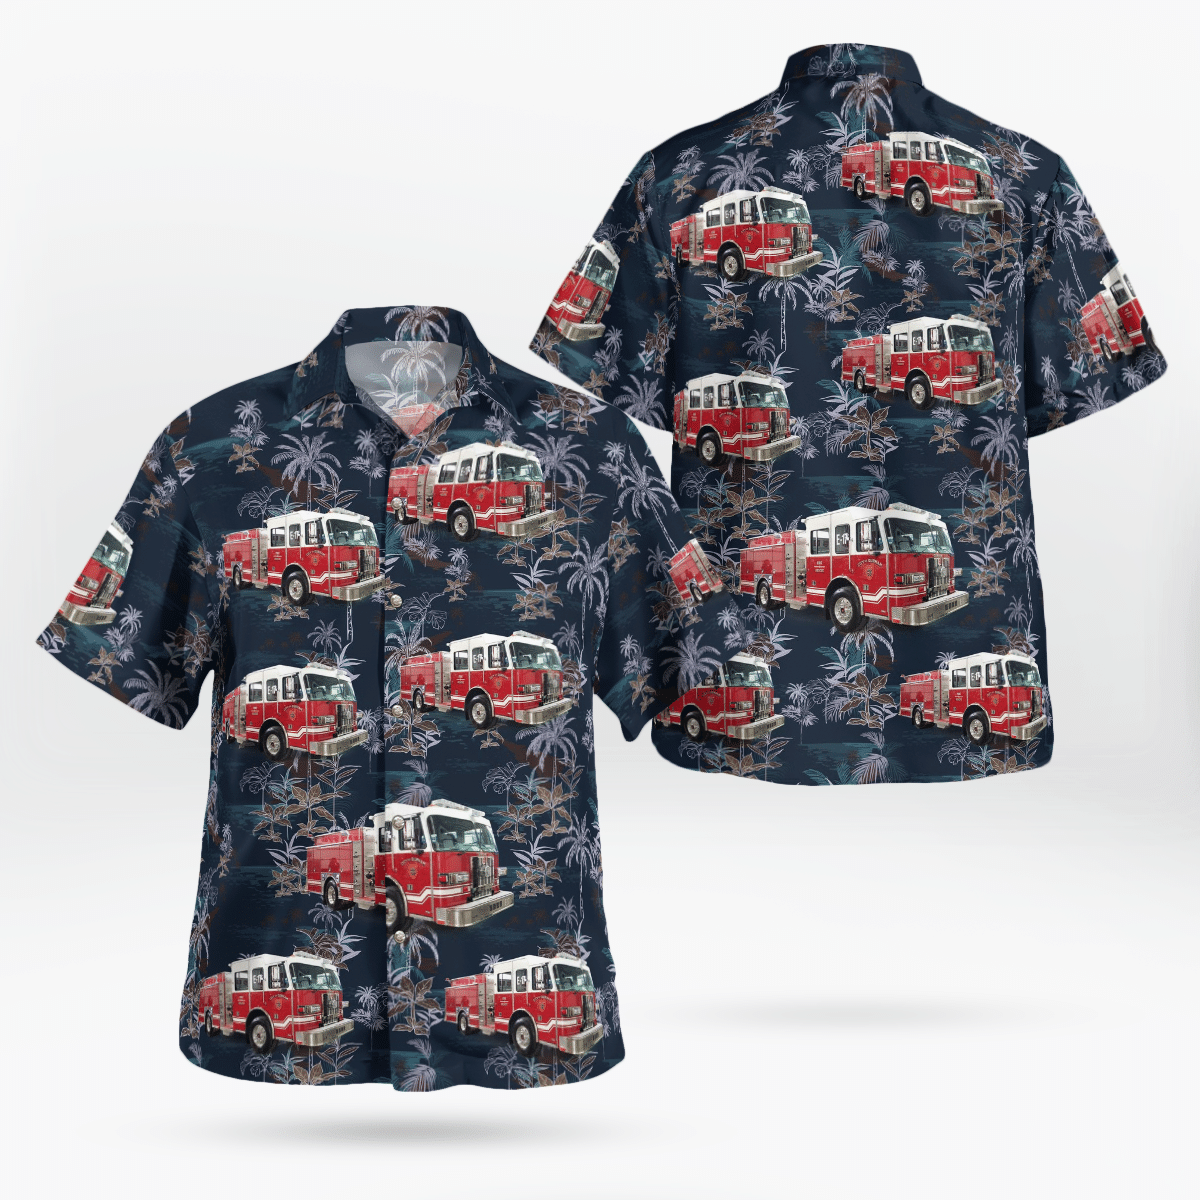 You won't regret buying these Aloha Shirt 104